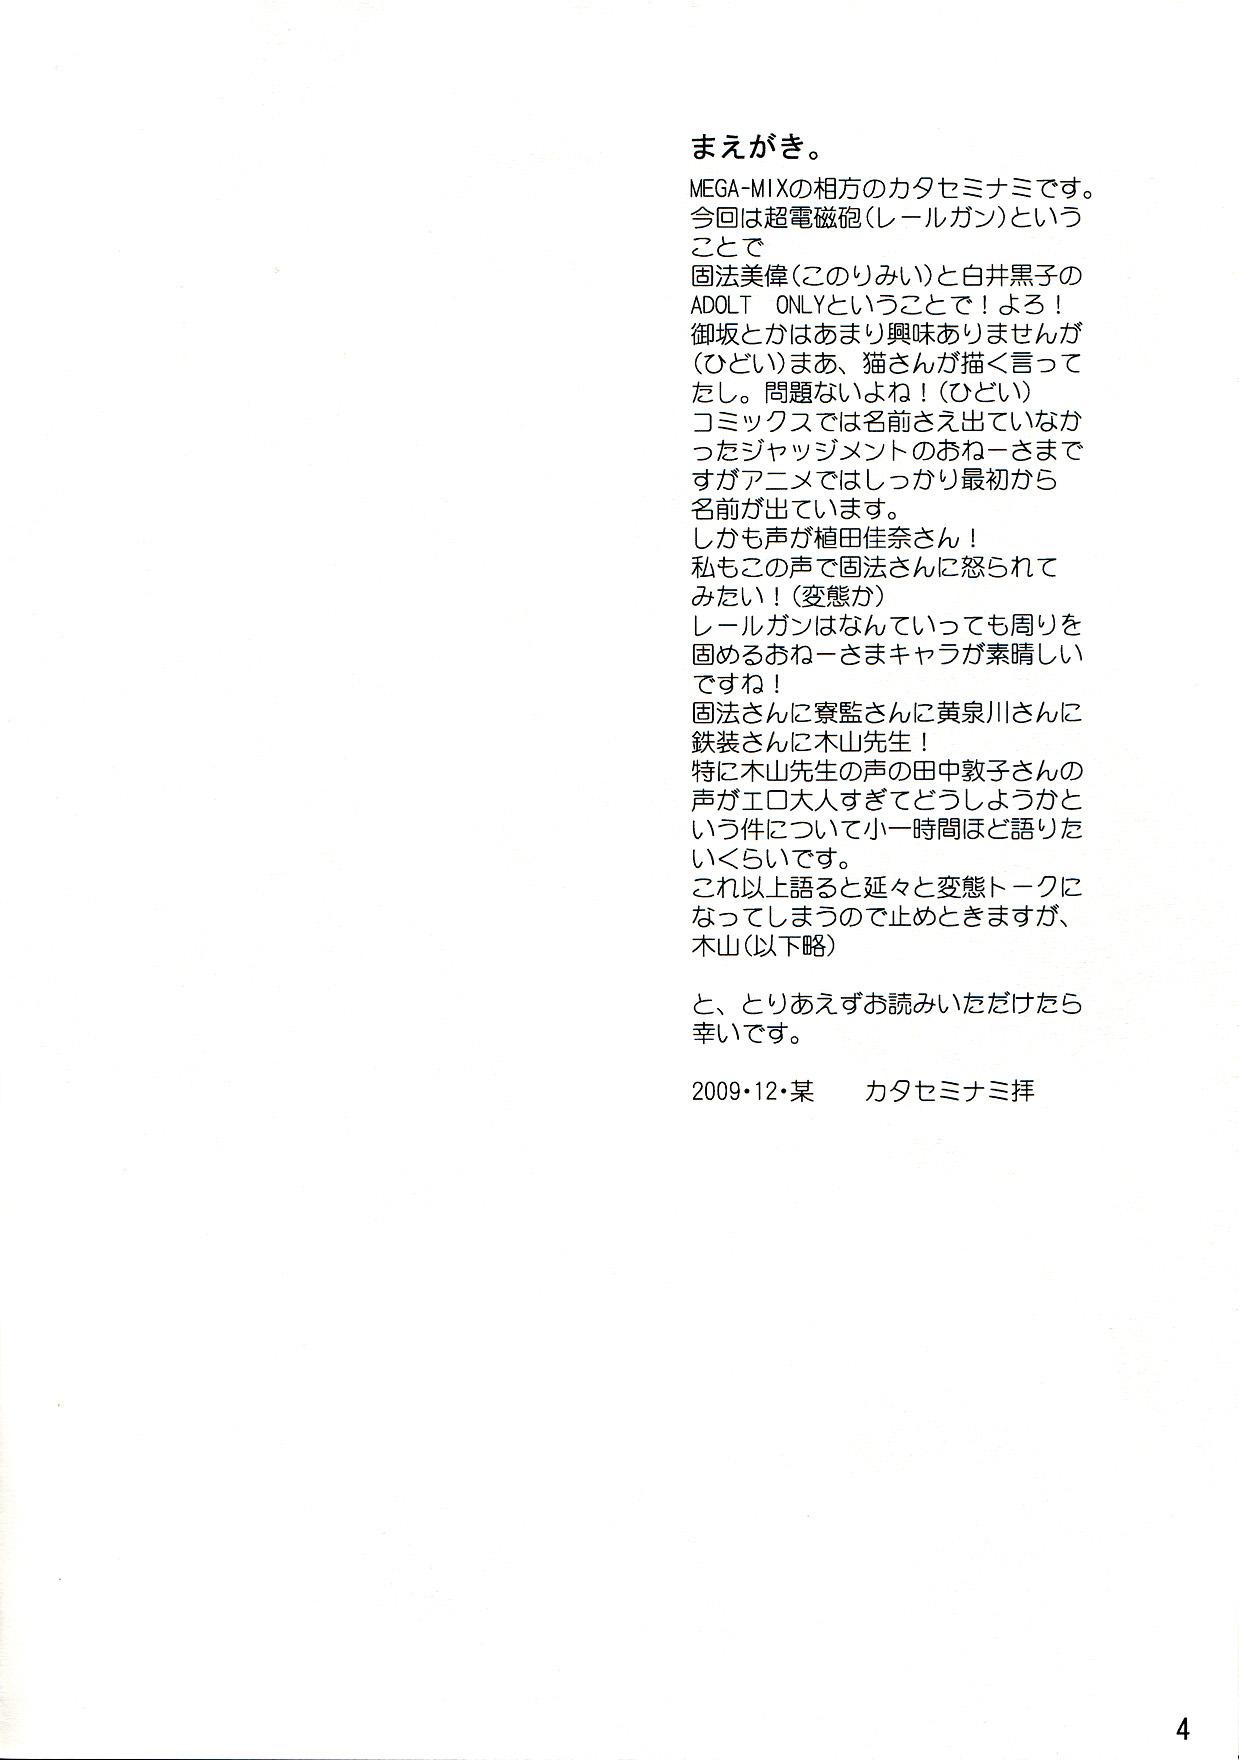 Phat Toaru Kagaku no Judgement - Toaru kagaku no railgun Exhib - Page 4